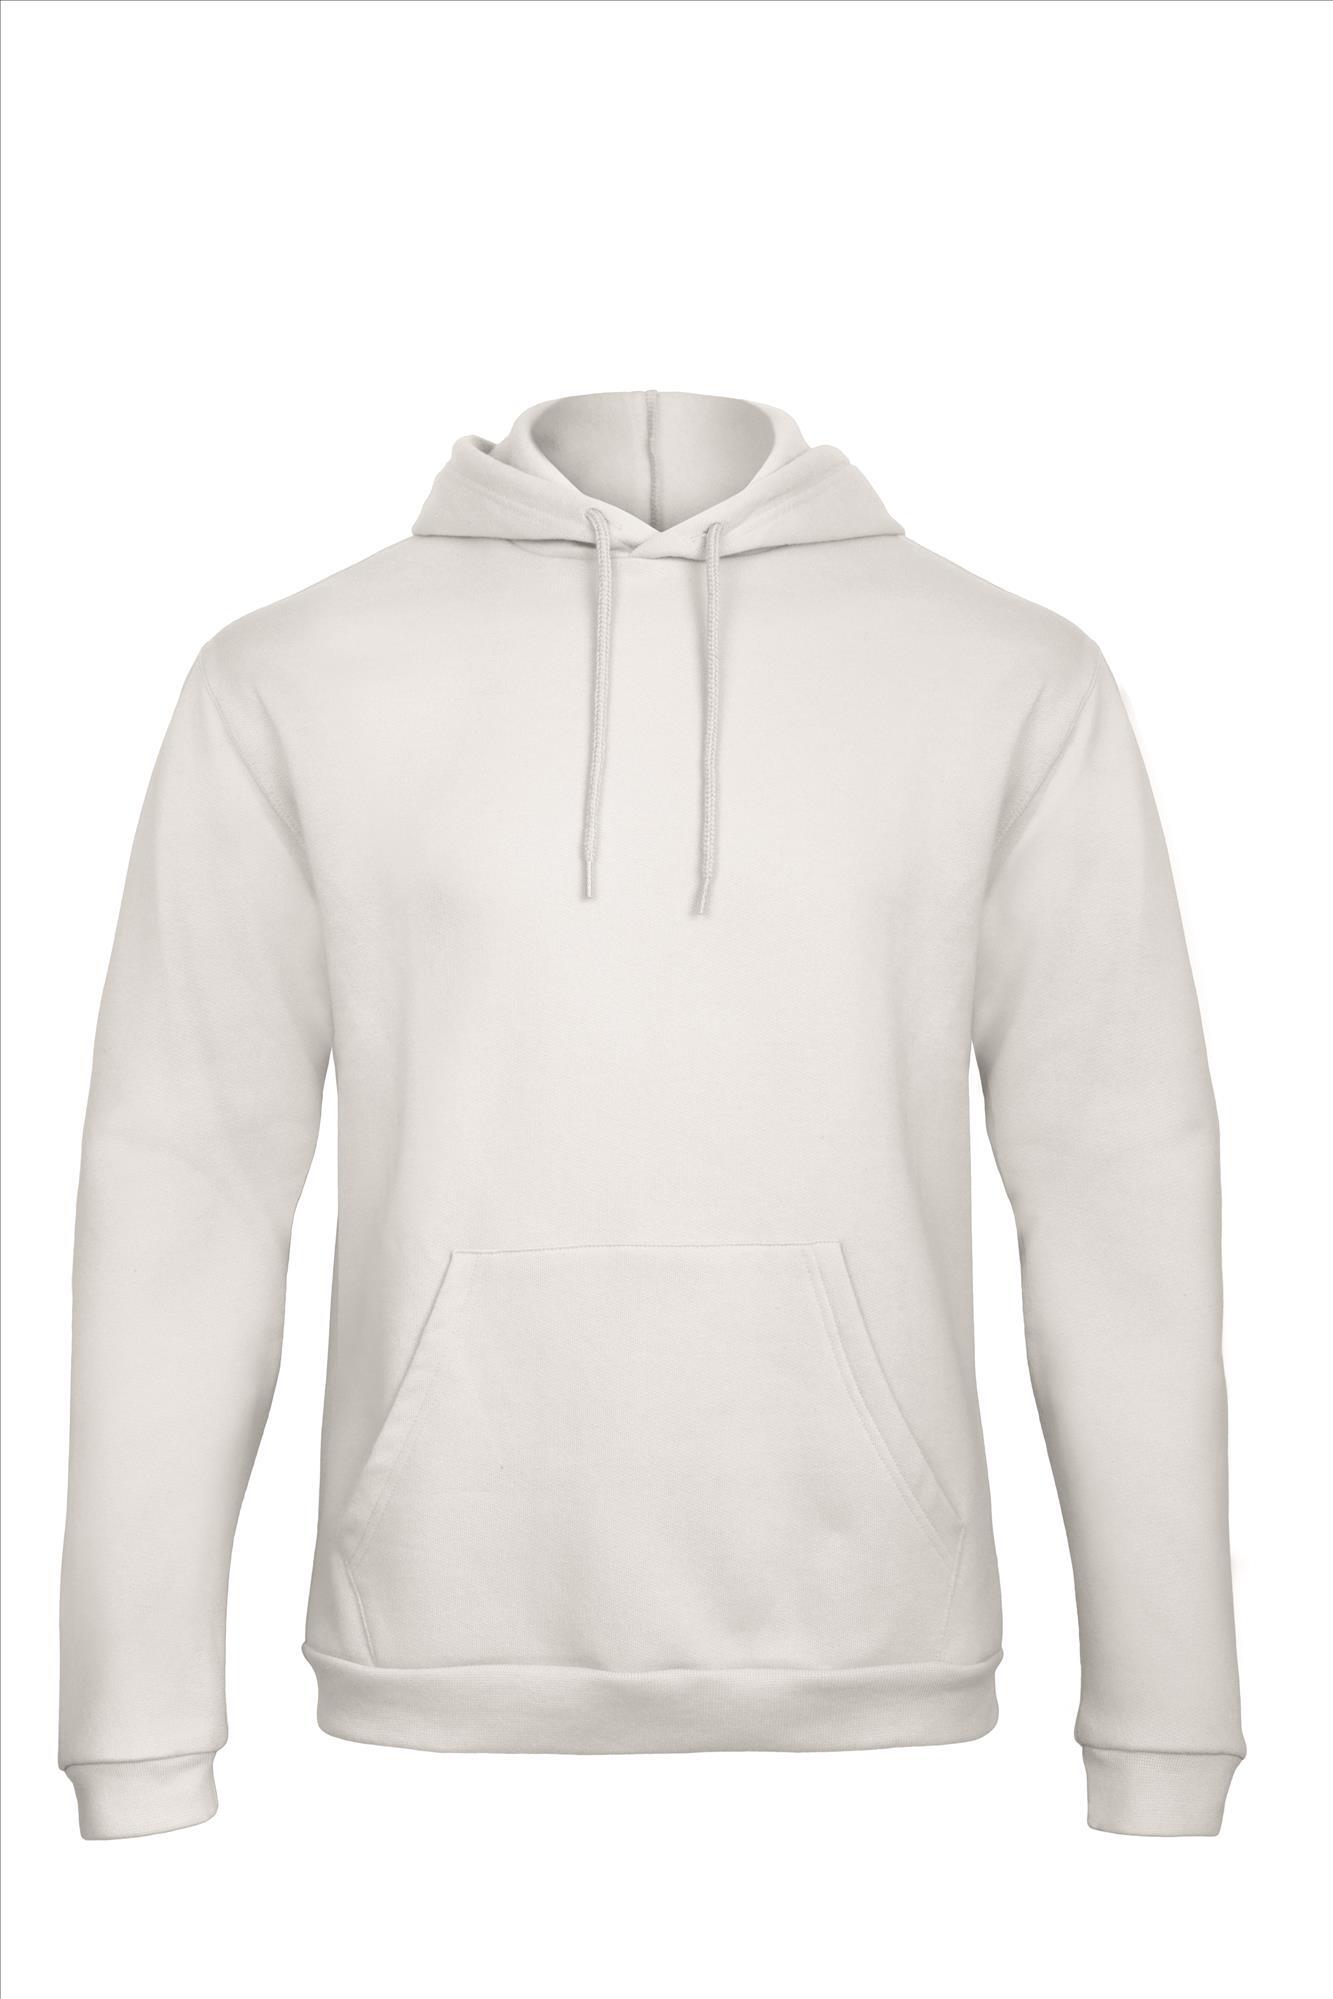 Witte Hooded Sweatshirt Unisex met capuchon heren bedrukbaar